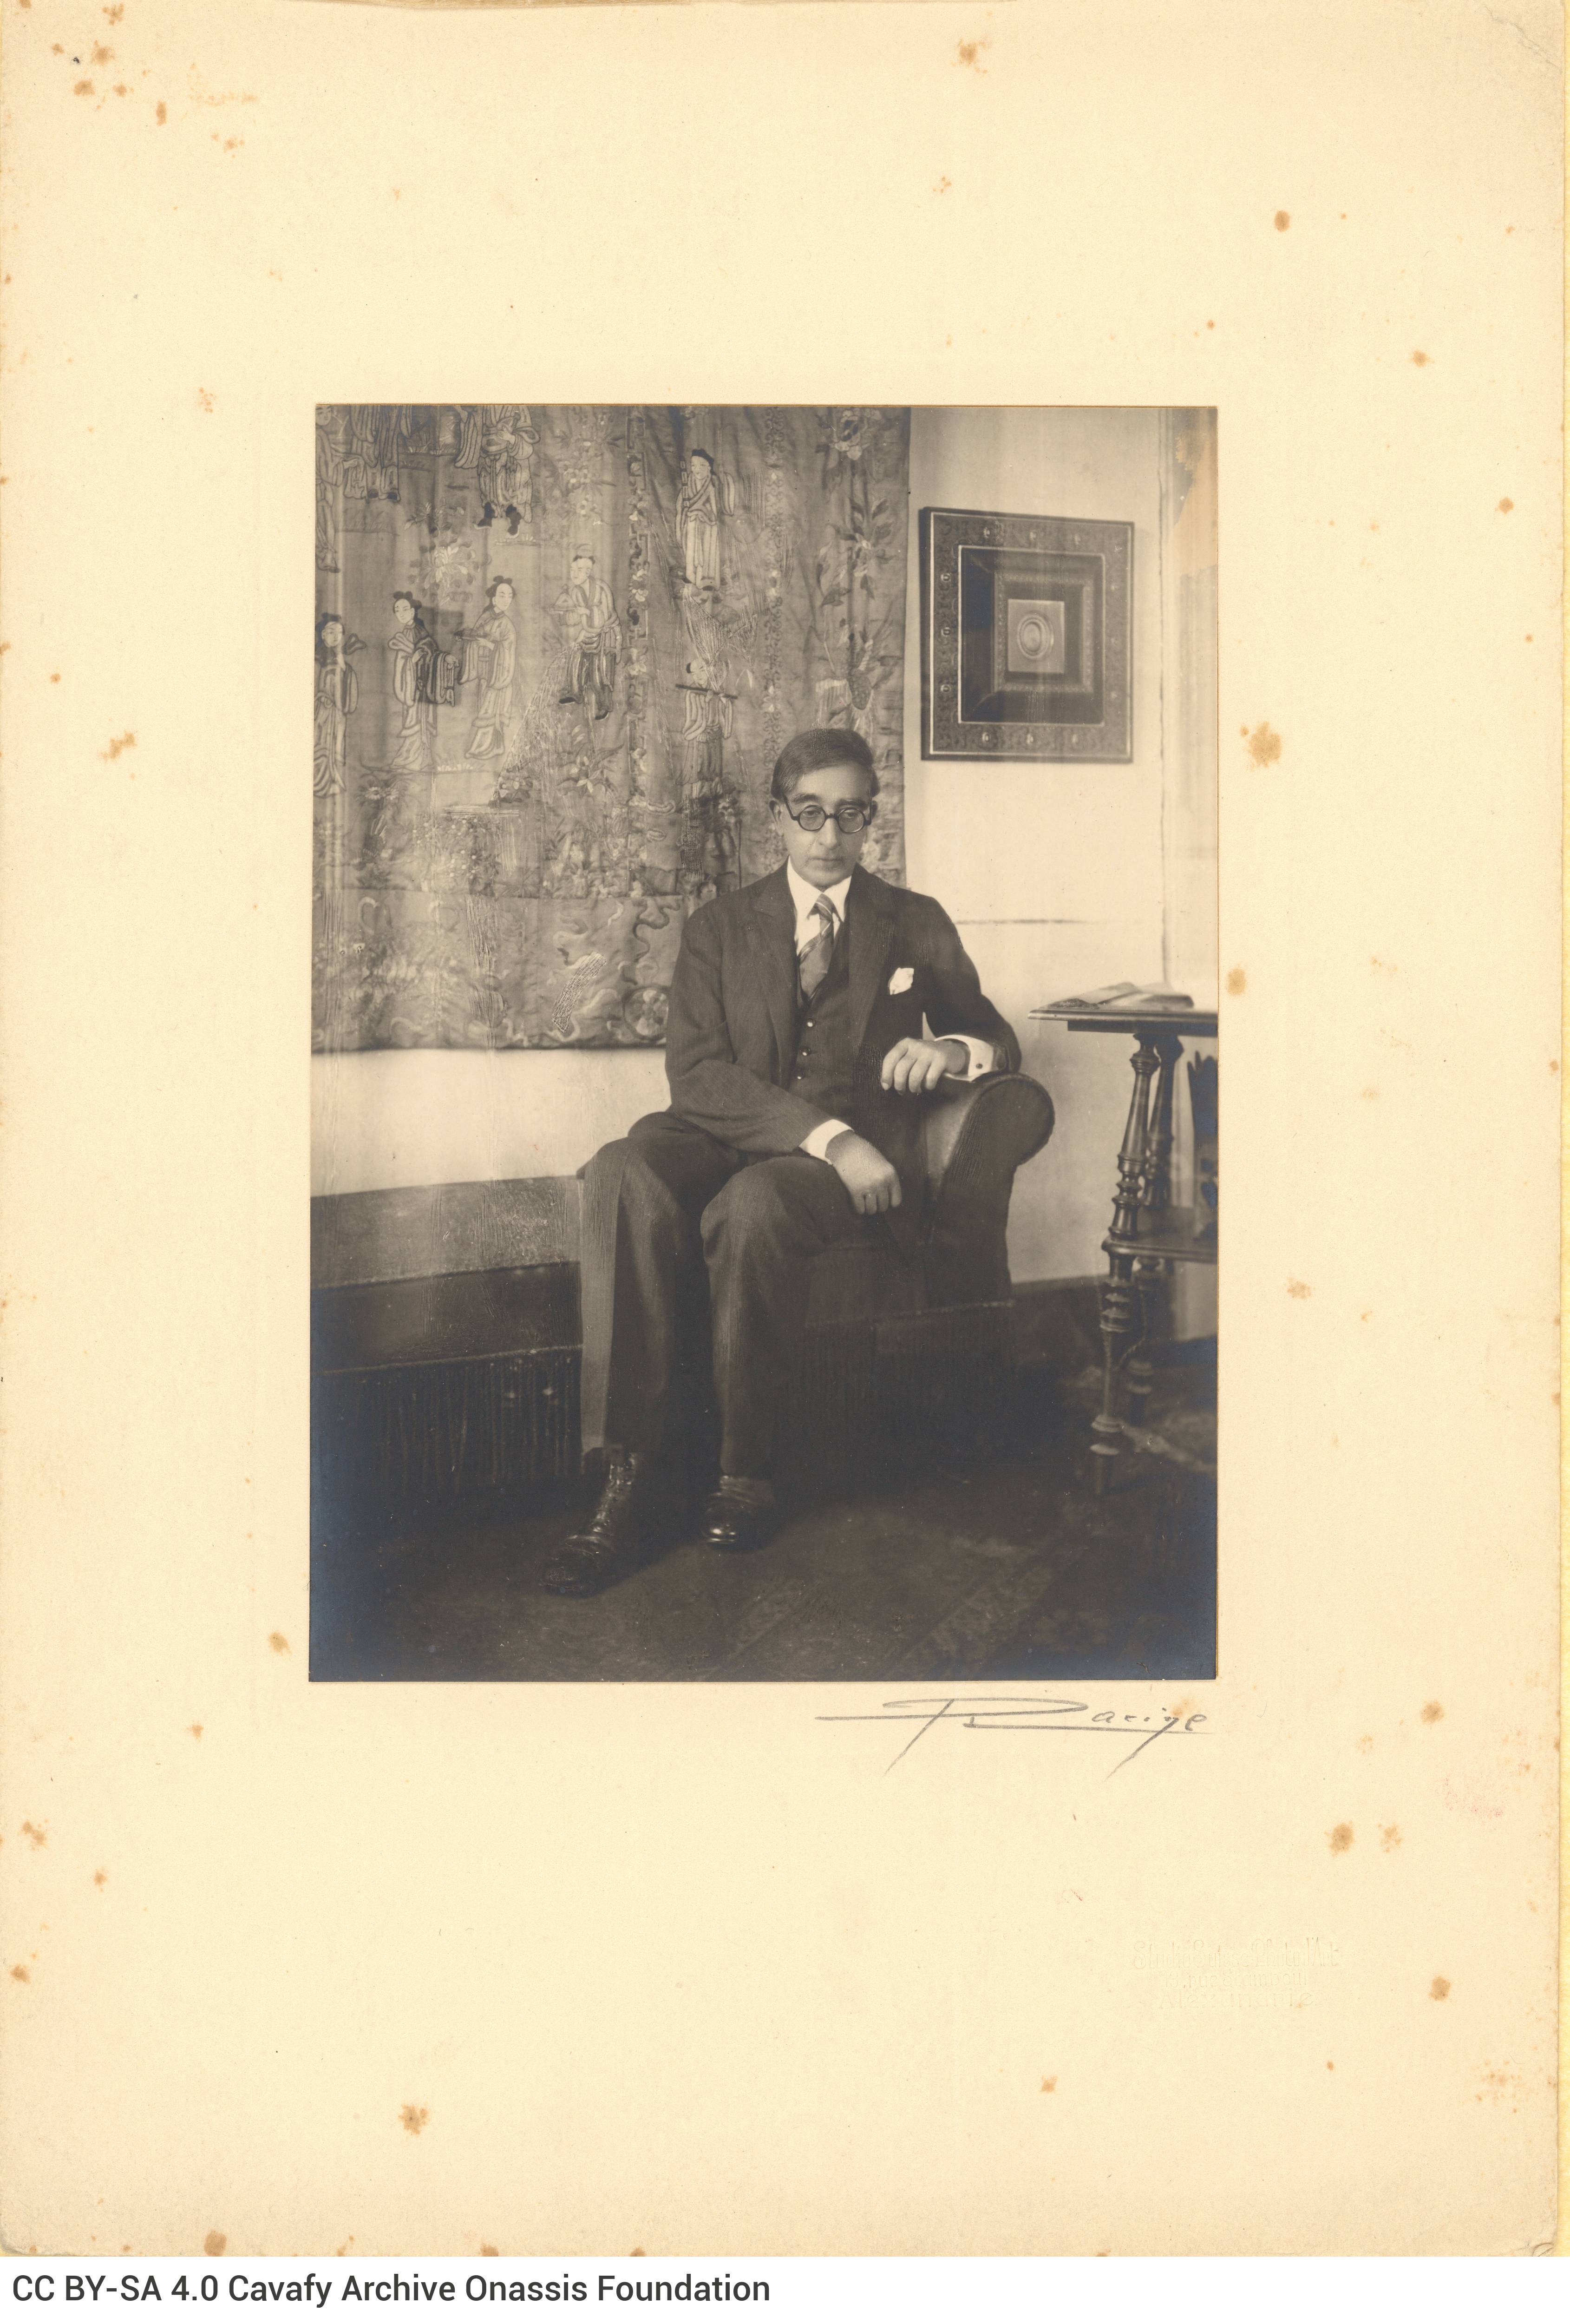 Φωτογραφικό πορτρέτο του Καβάφη σε ώριμη ηλικία στο διαμέρισμά του, 